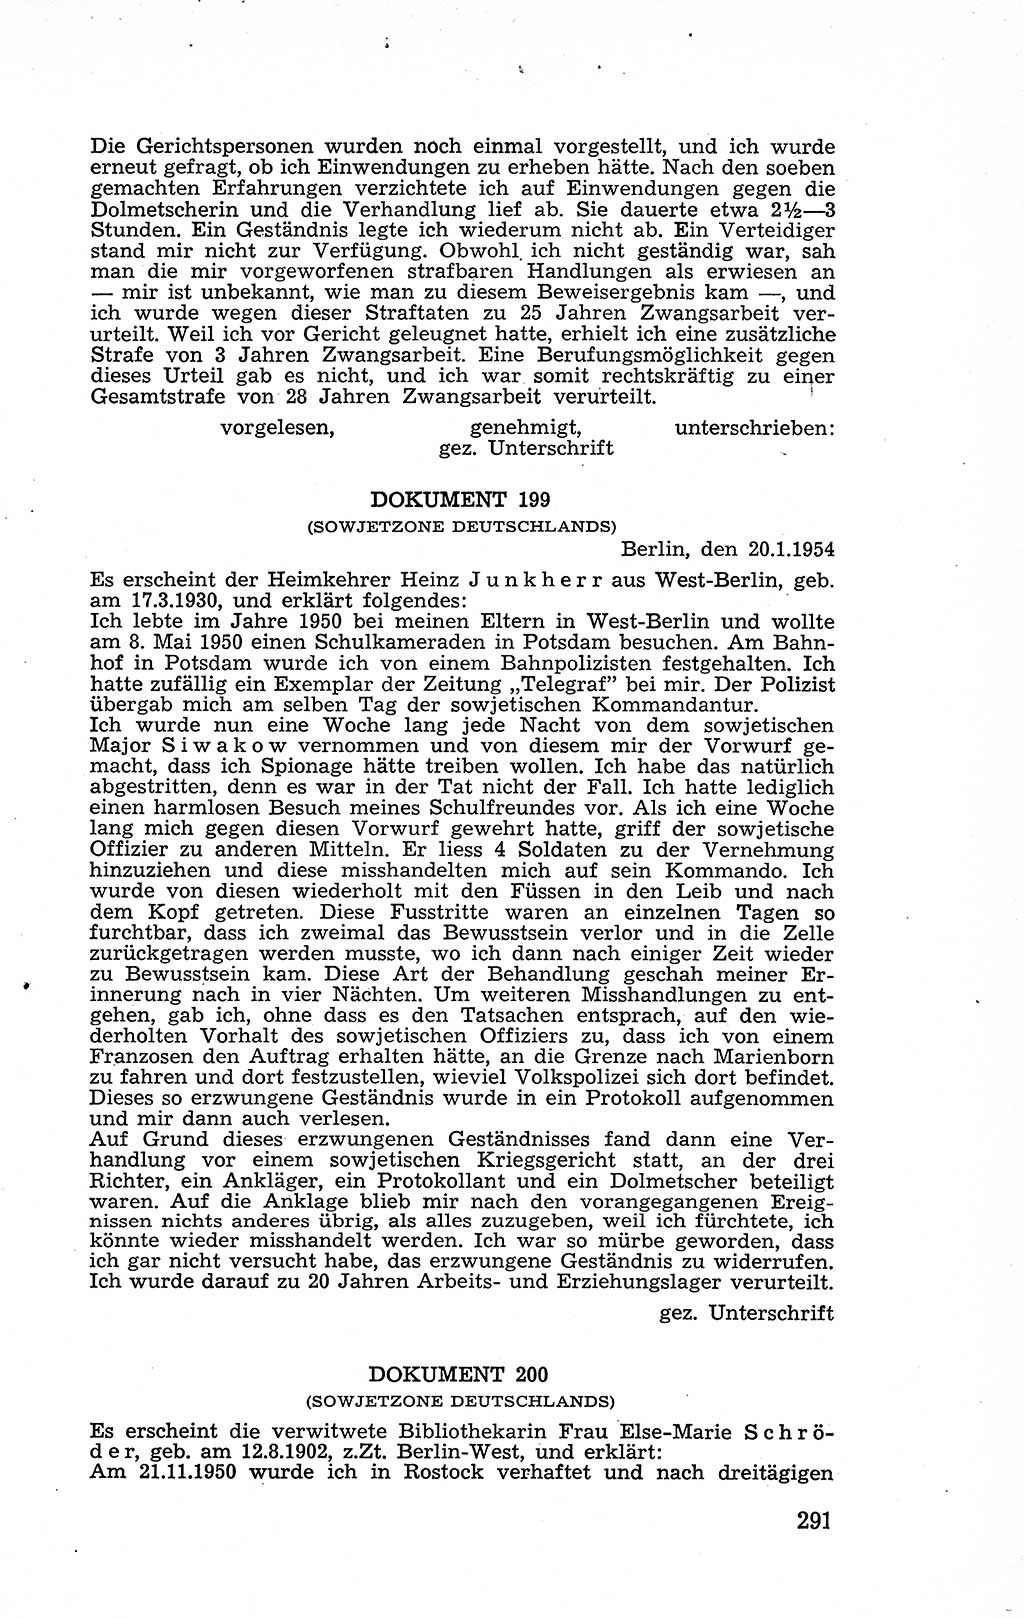 Recht in Fesseln, Dokumente, Internationale Juristen-Kommission [Bundesrepublik Deutschland (BRD)] 1955, Seite 291 (R. Dok. IJK BRD 1955, S. 291)